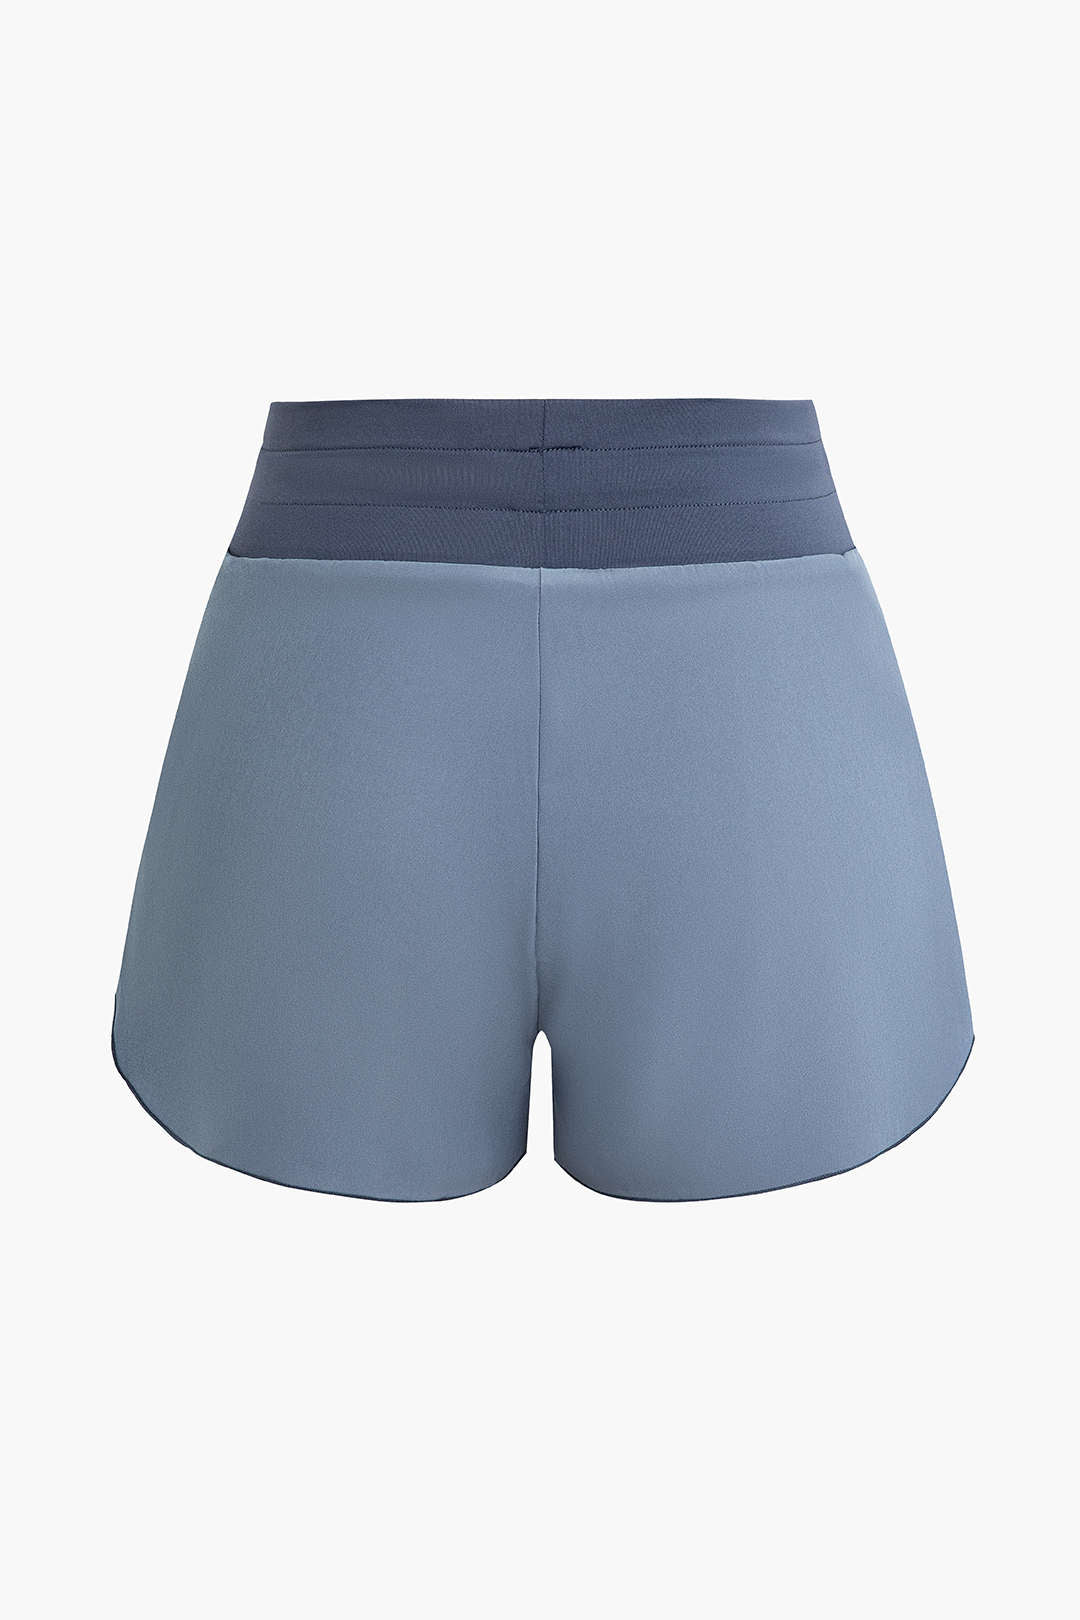 Basic Drawstring Waist Athletic Shorts